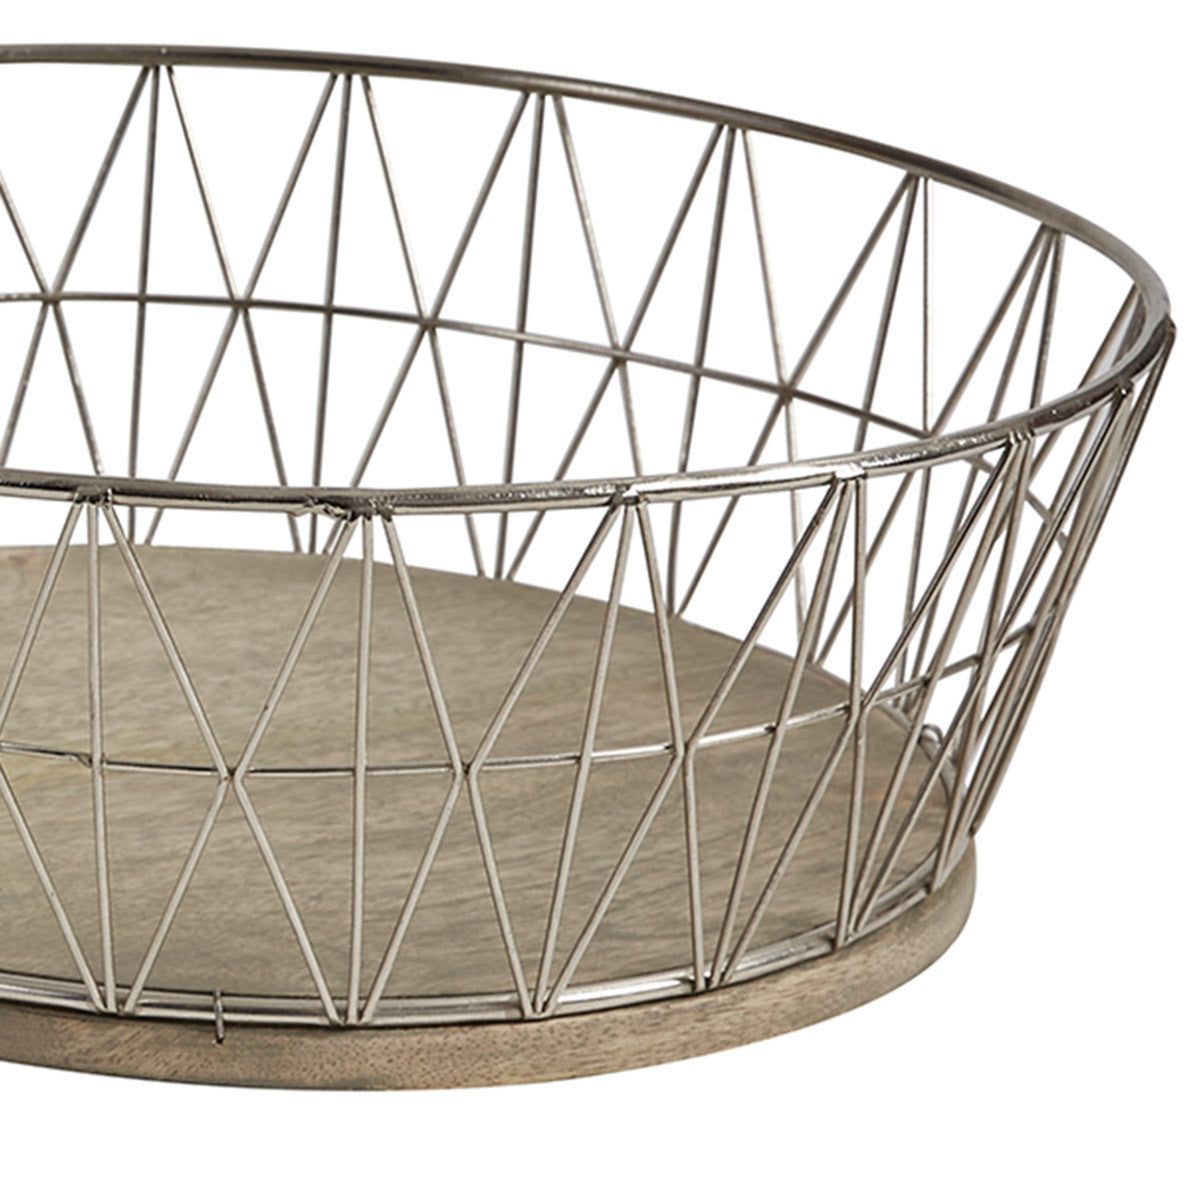 Crestwood Baskets Set of 2 - Park Designs